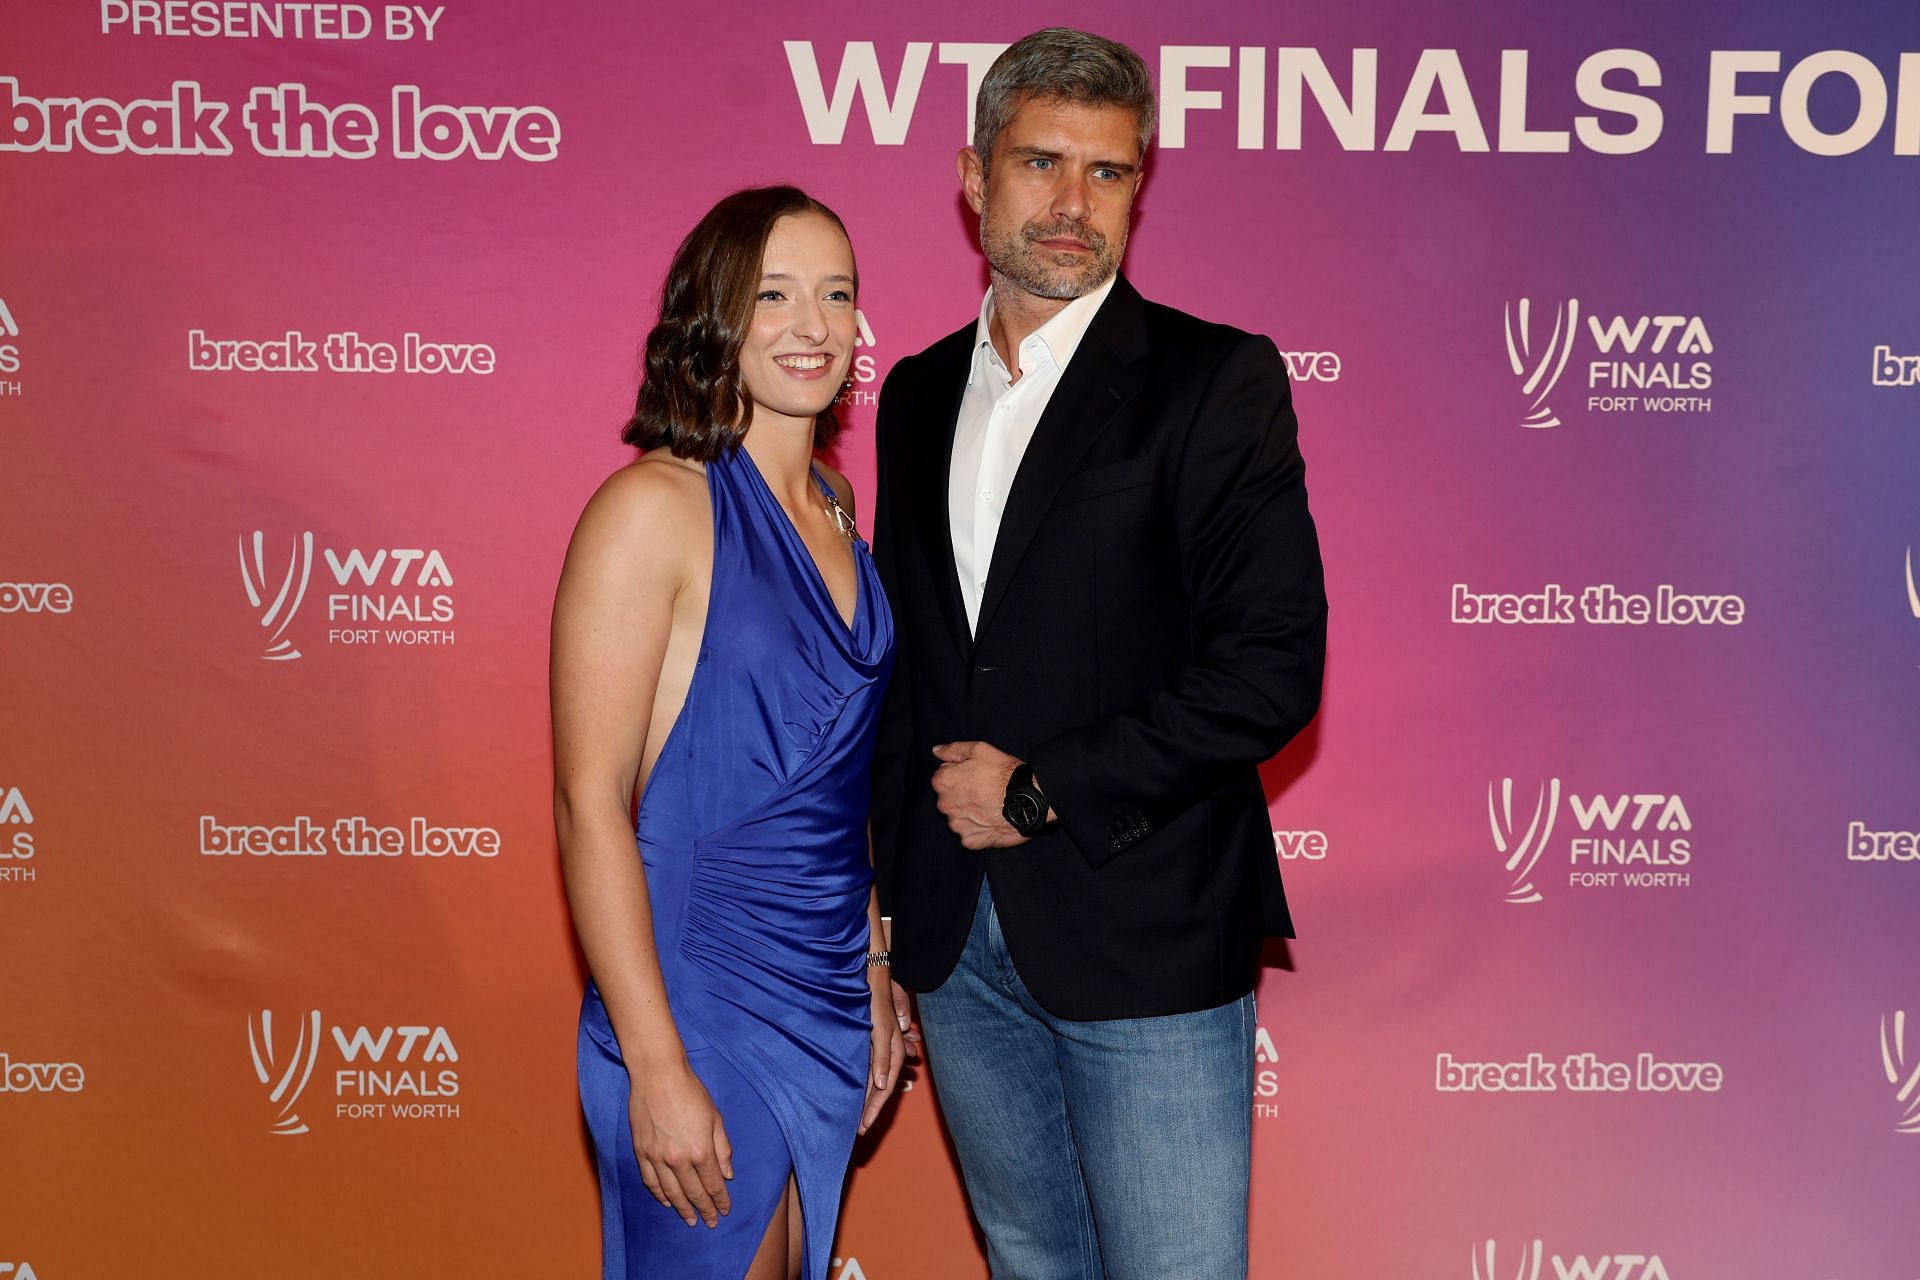 Iga Swiatek and her coach Tomasz Wiktorowski at the 2022 WTA Finals